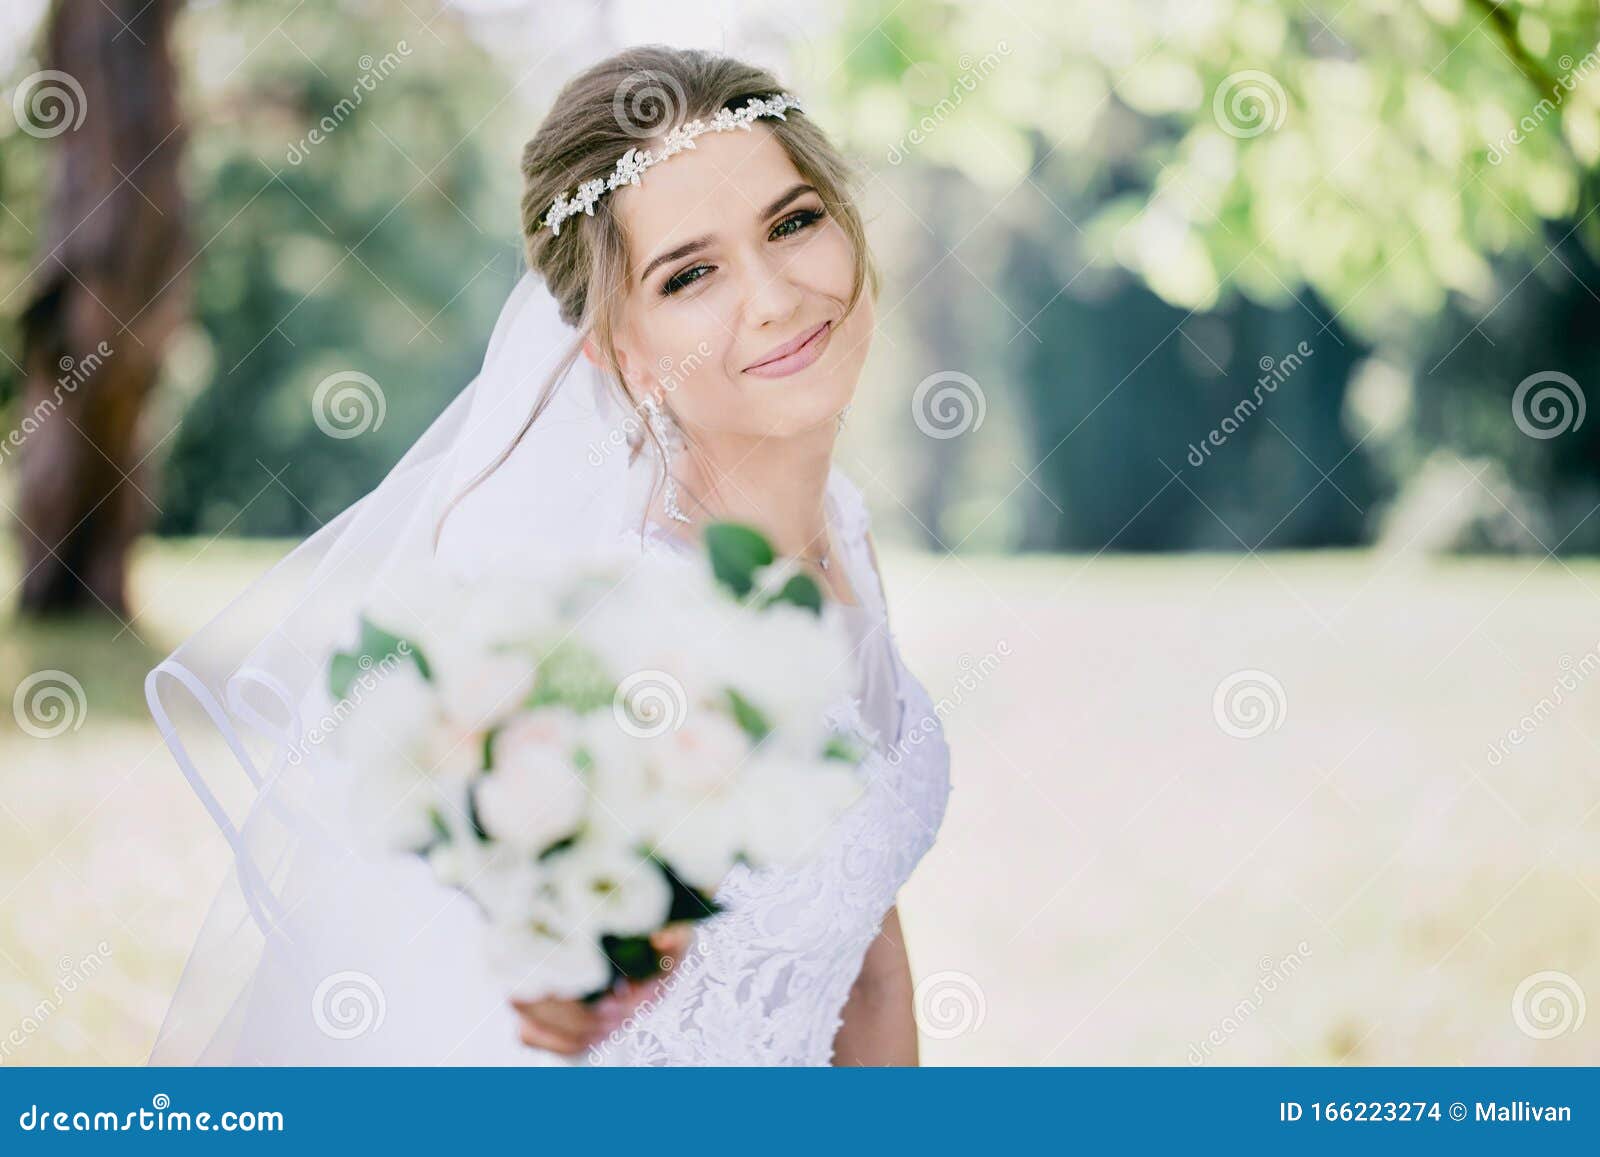 婚纱摄影样片美丽新娘图片素材-编号15521866-图行天下